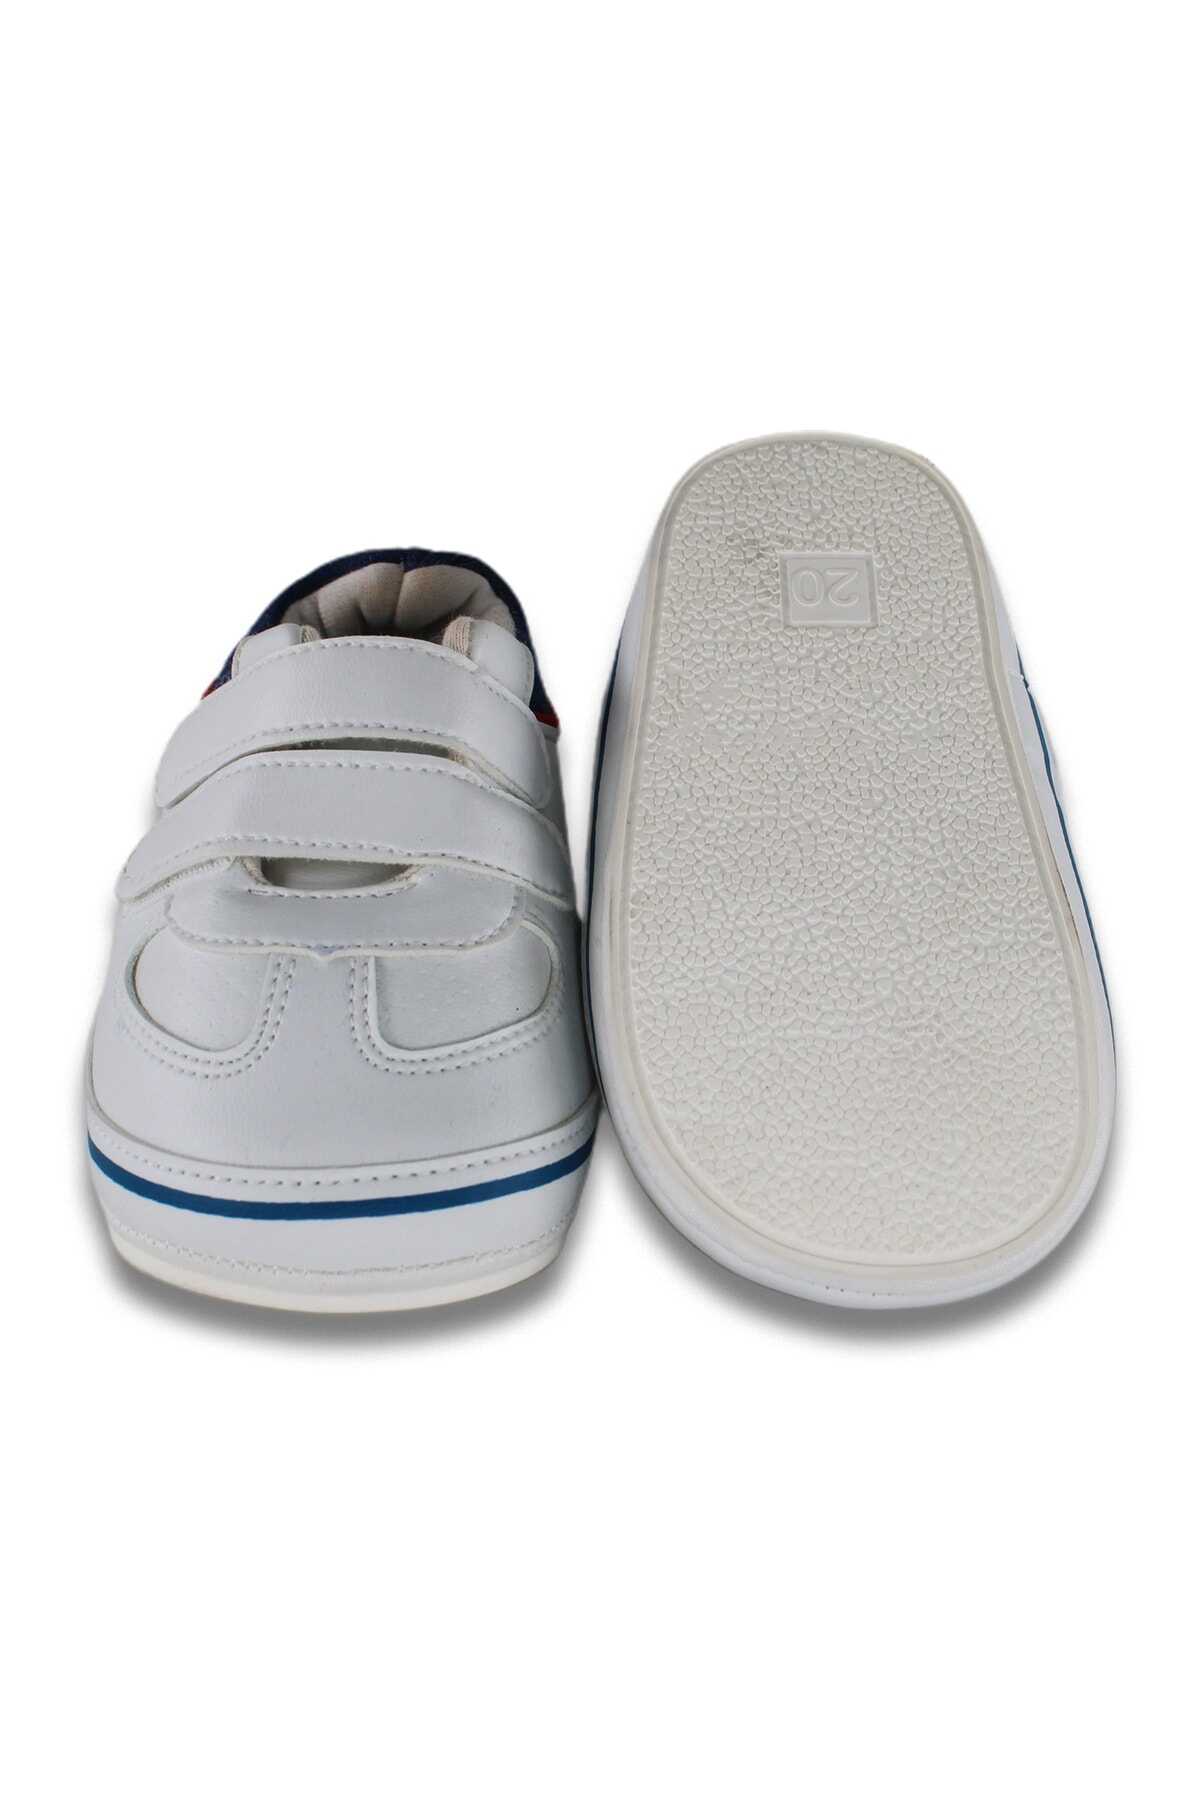 کفش ورزشی دو چسب بچه گانه یونیسکس سفید برند Pommy Kids